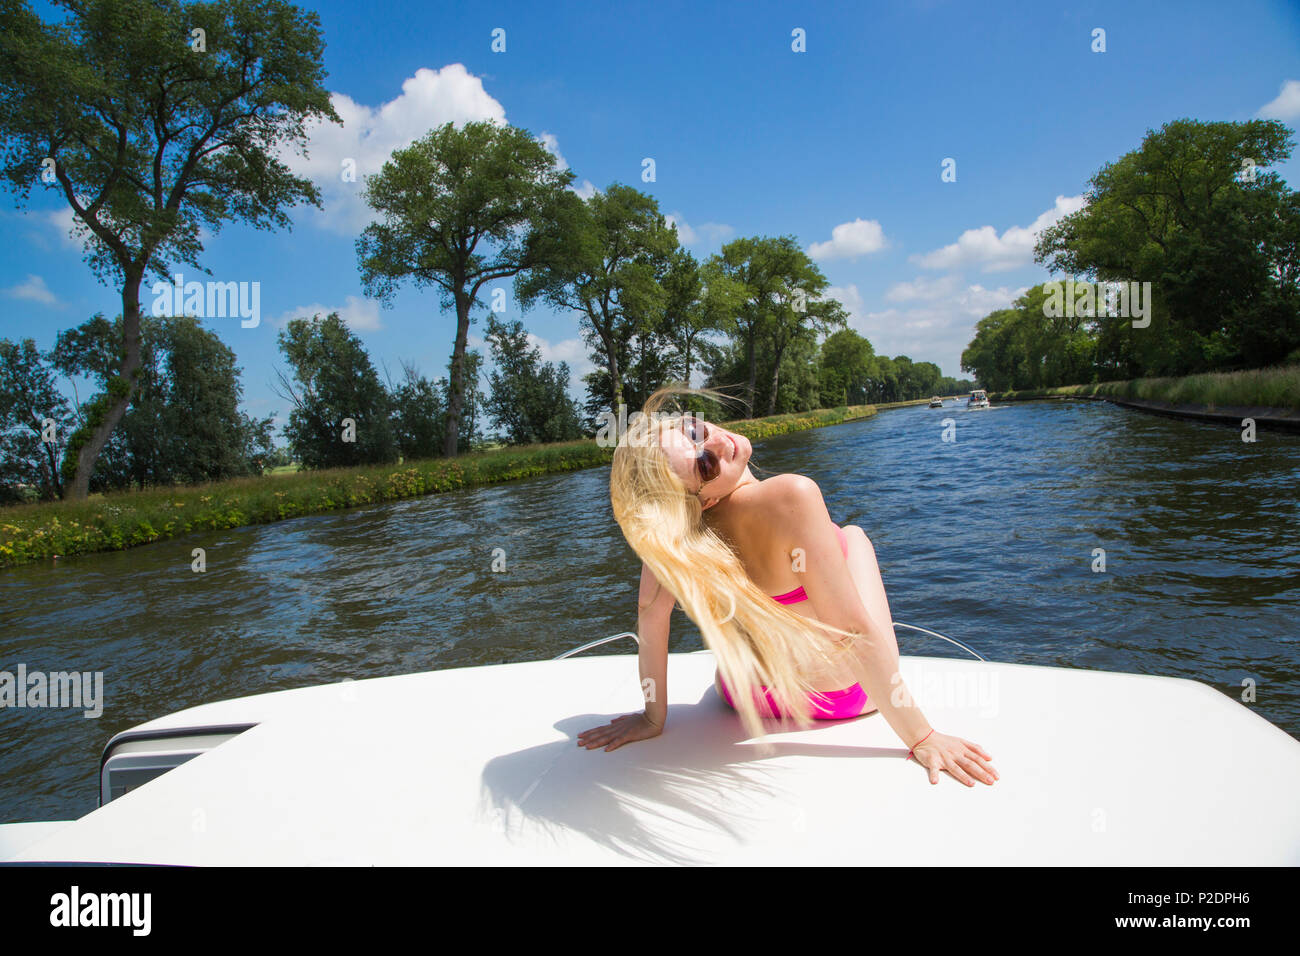 Joven rubia mujer vistiendo un bikini relajándose en la cubierta de un barco Le Royal Mystique casa flotante en Plassendale - canal Niuewpoort Foto de stock